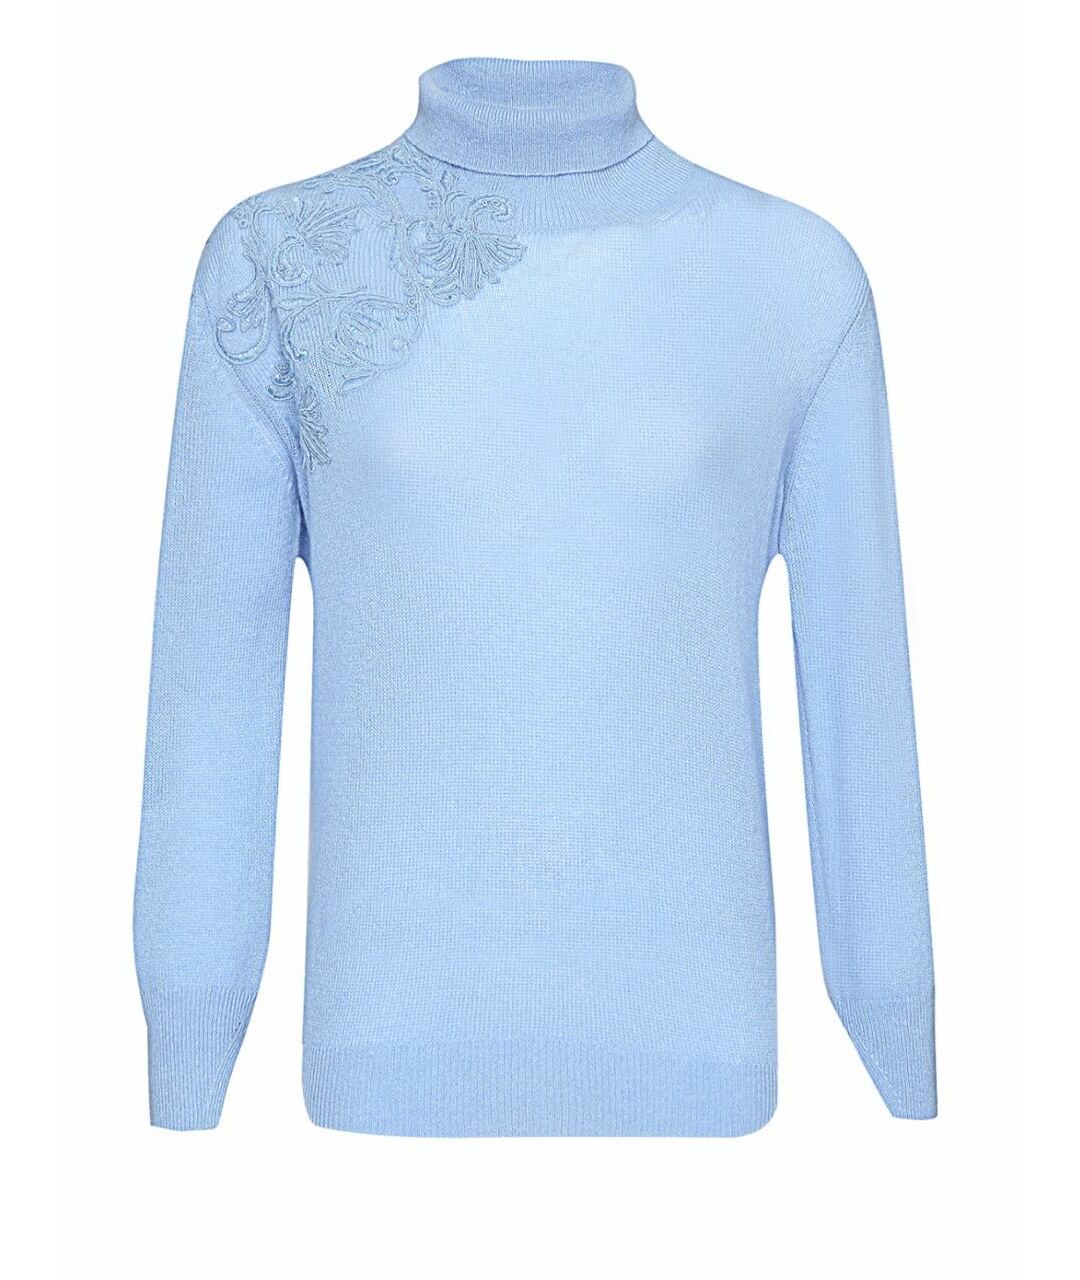 ERMANNO SCERVINO Голубой кашемировый джемпер / свитер, фото 1